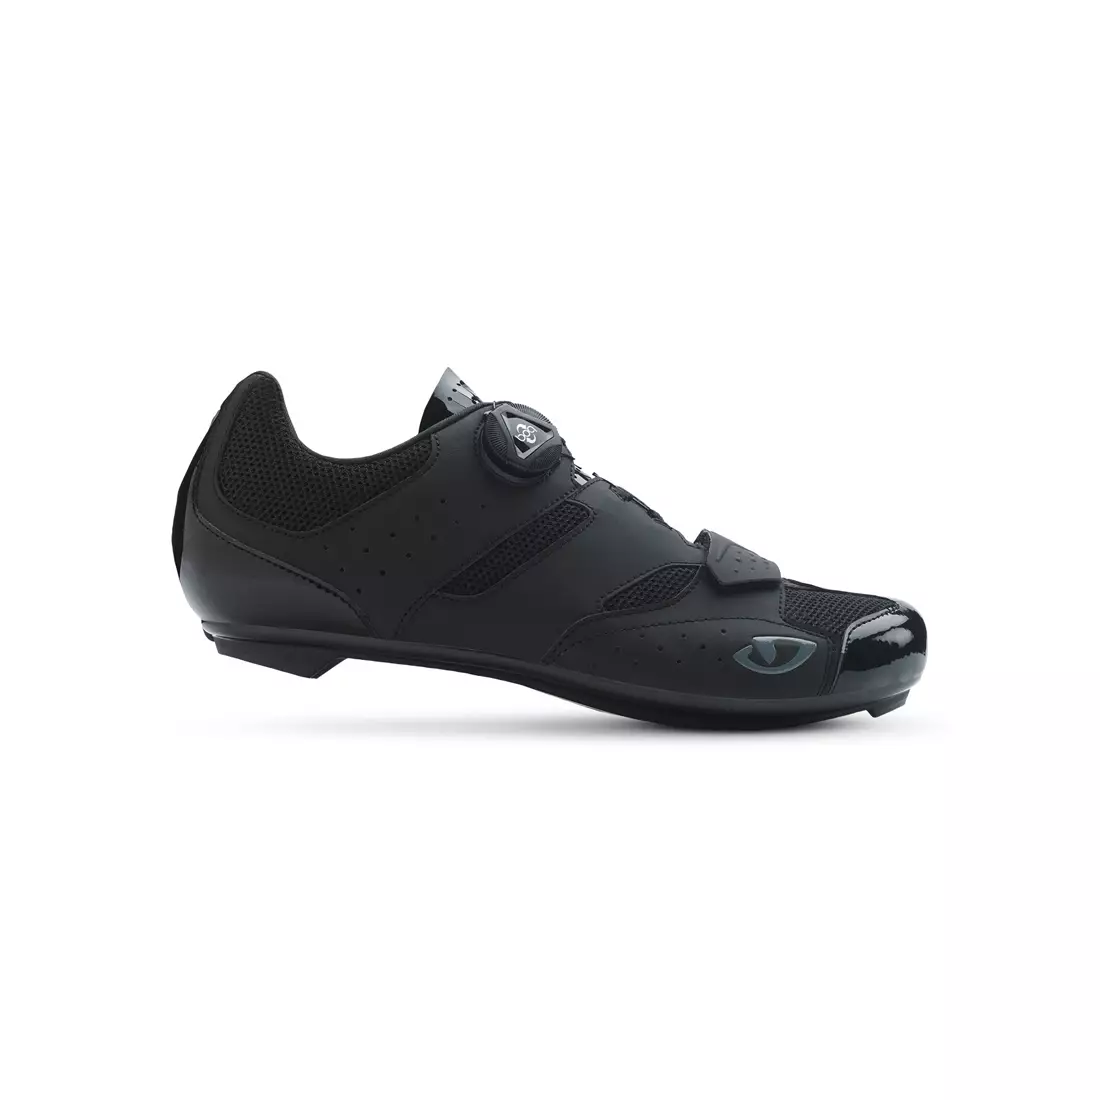 GIRO SAVIX - pánska cyklistická obuv - cestná čierna